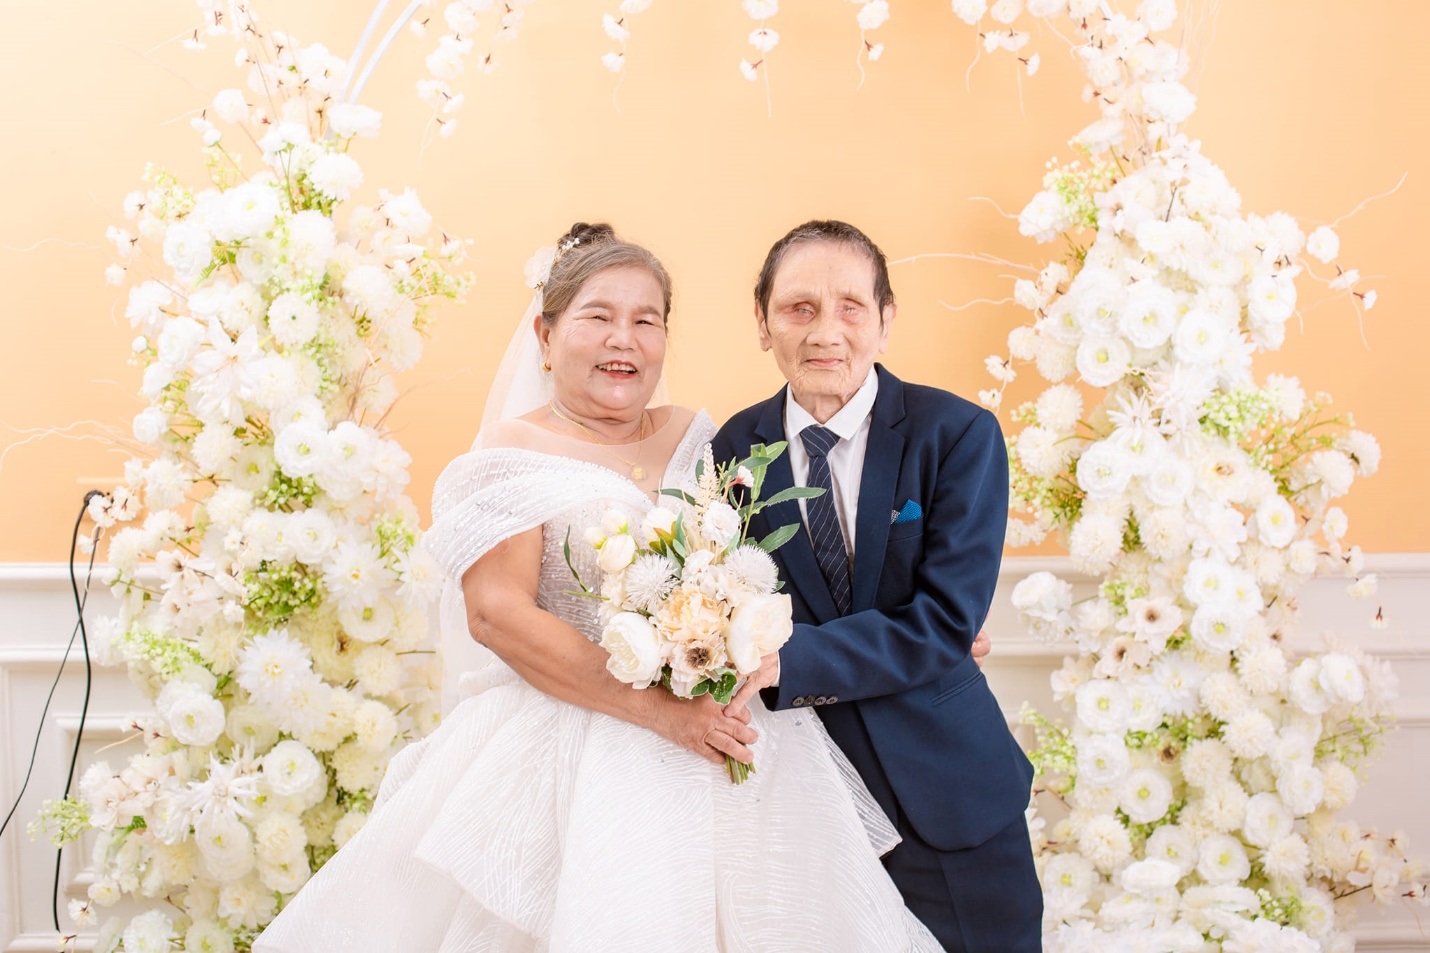 View - Tiết lộ bất ngờ sau bộ ảnh cưới "chồng mù, vợ mồ côi U80" ở Nghệ An | Báo Dân trí